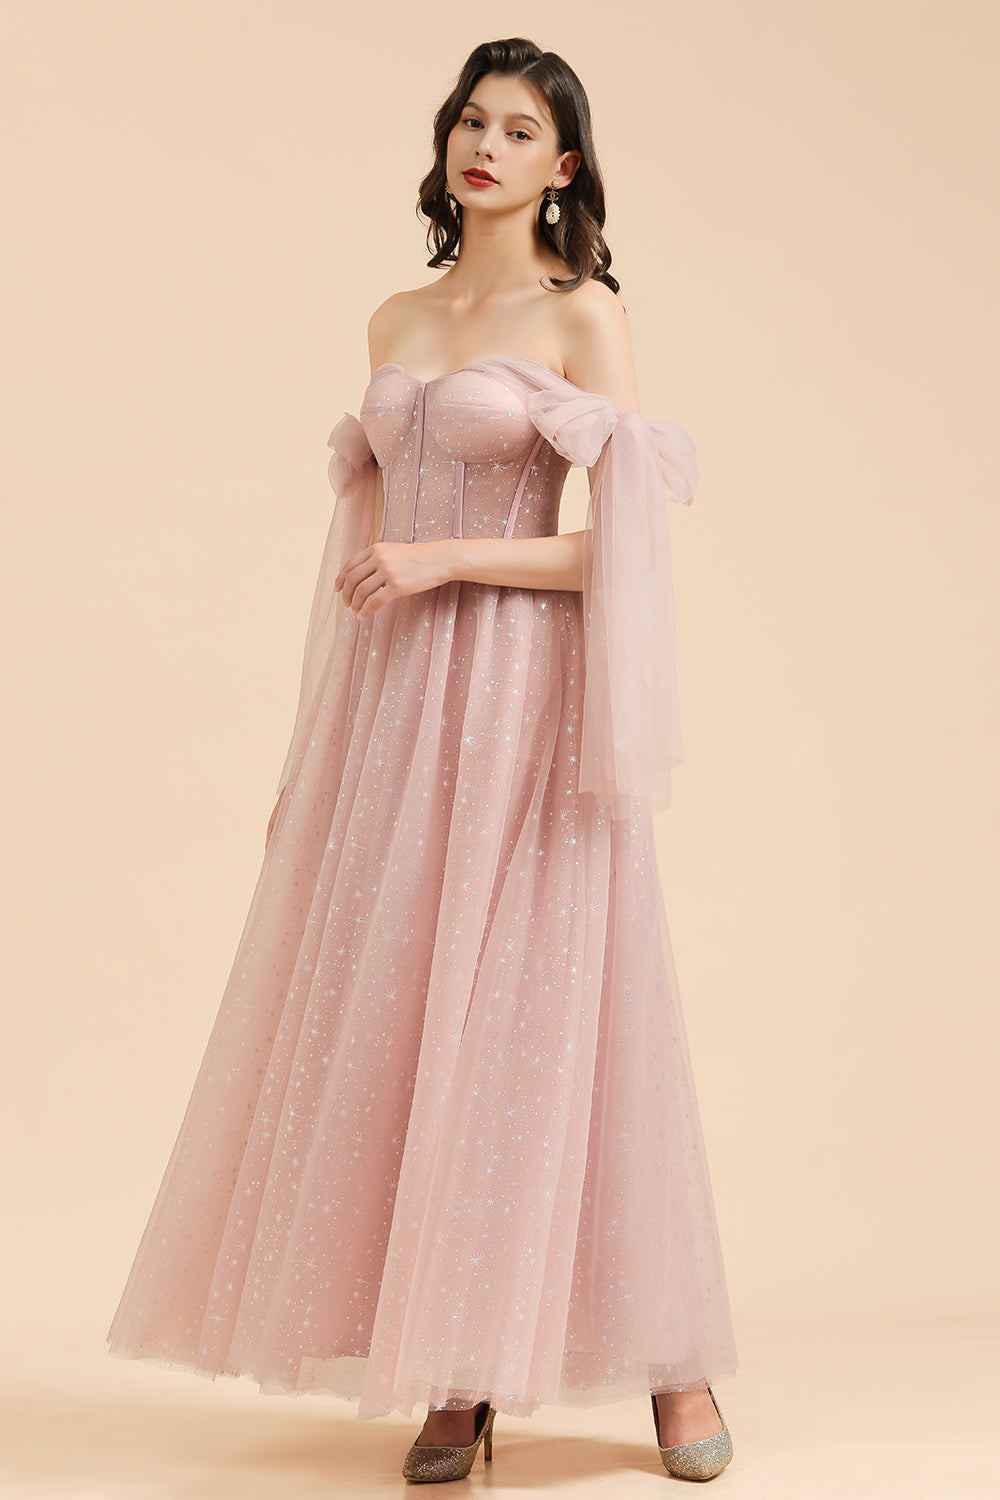 V-neck Tulle Long Evening Pink Prom Dress Online